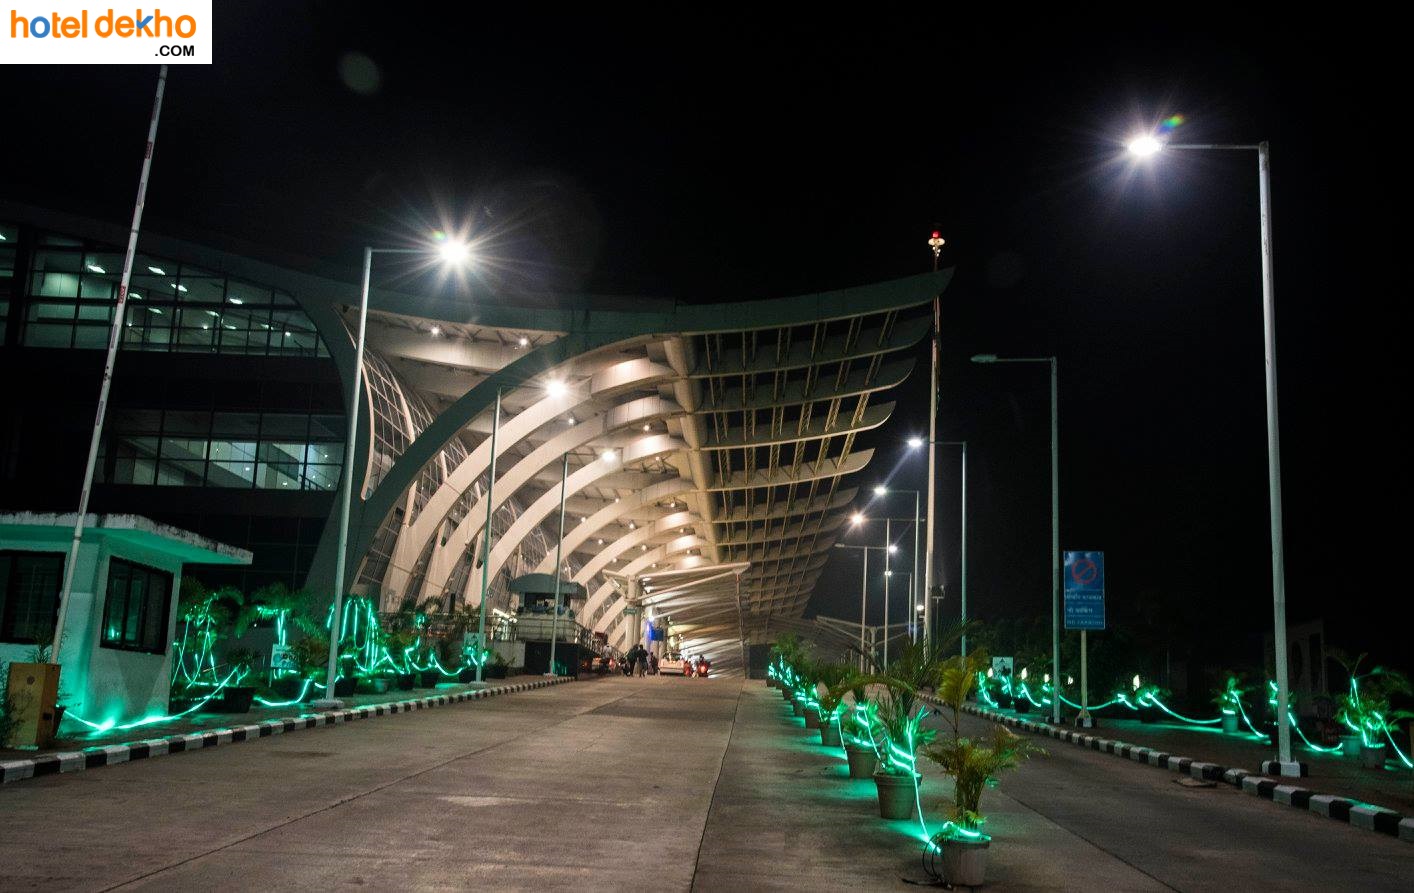 Goa International Airport, Goa (GOI)